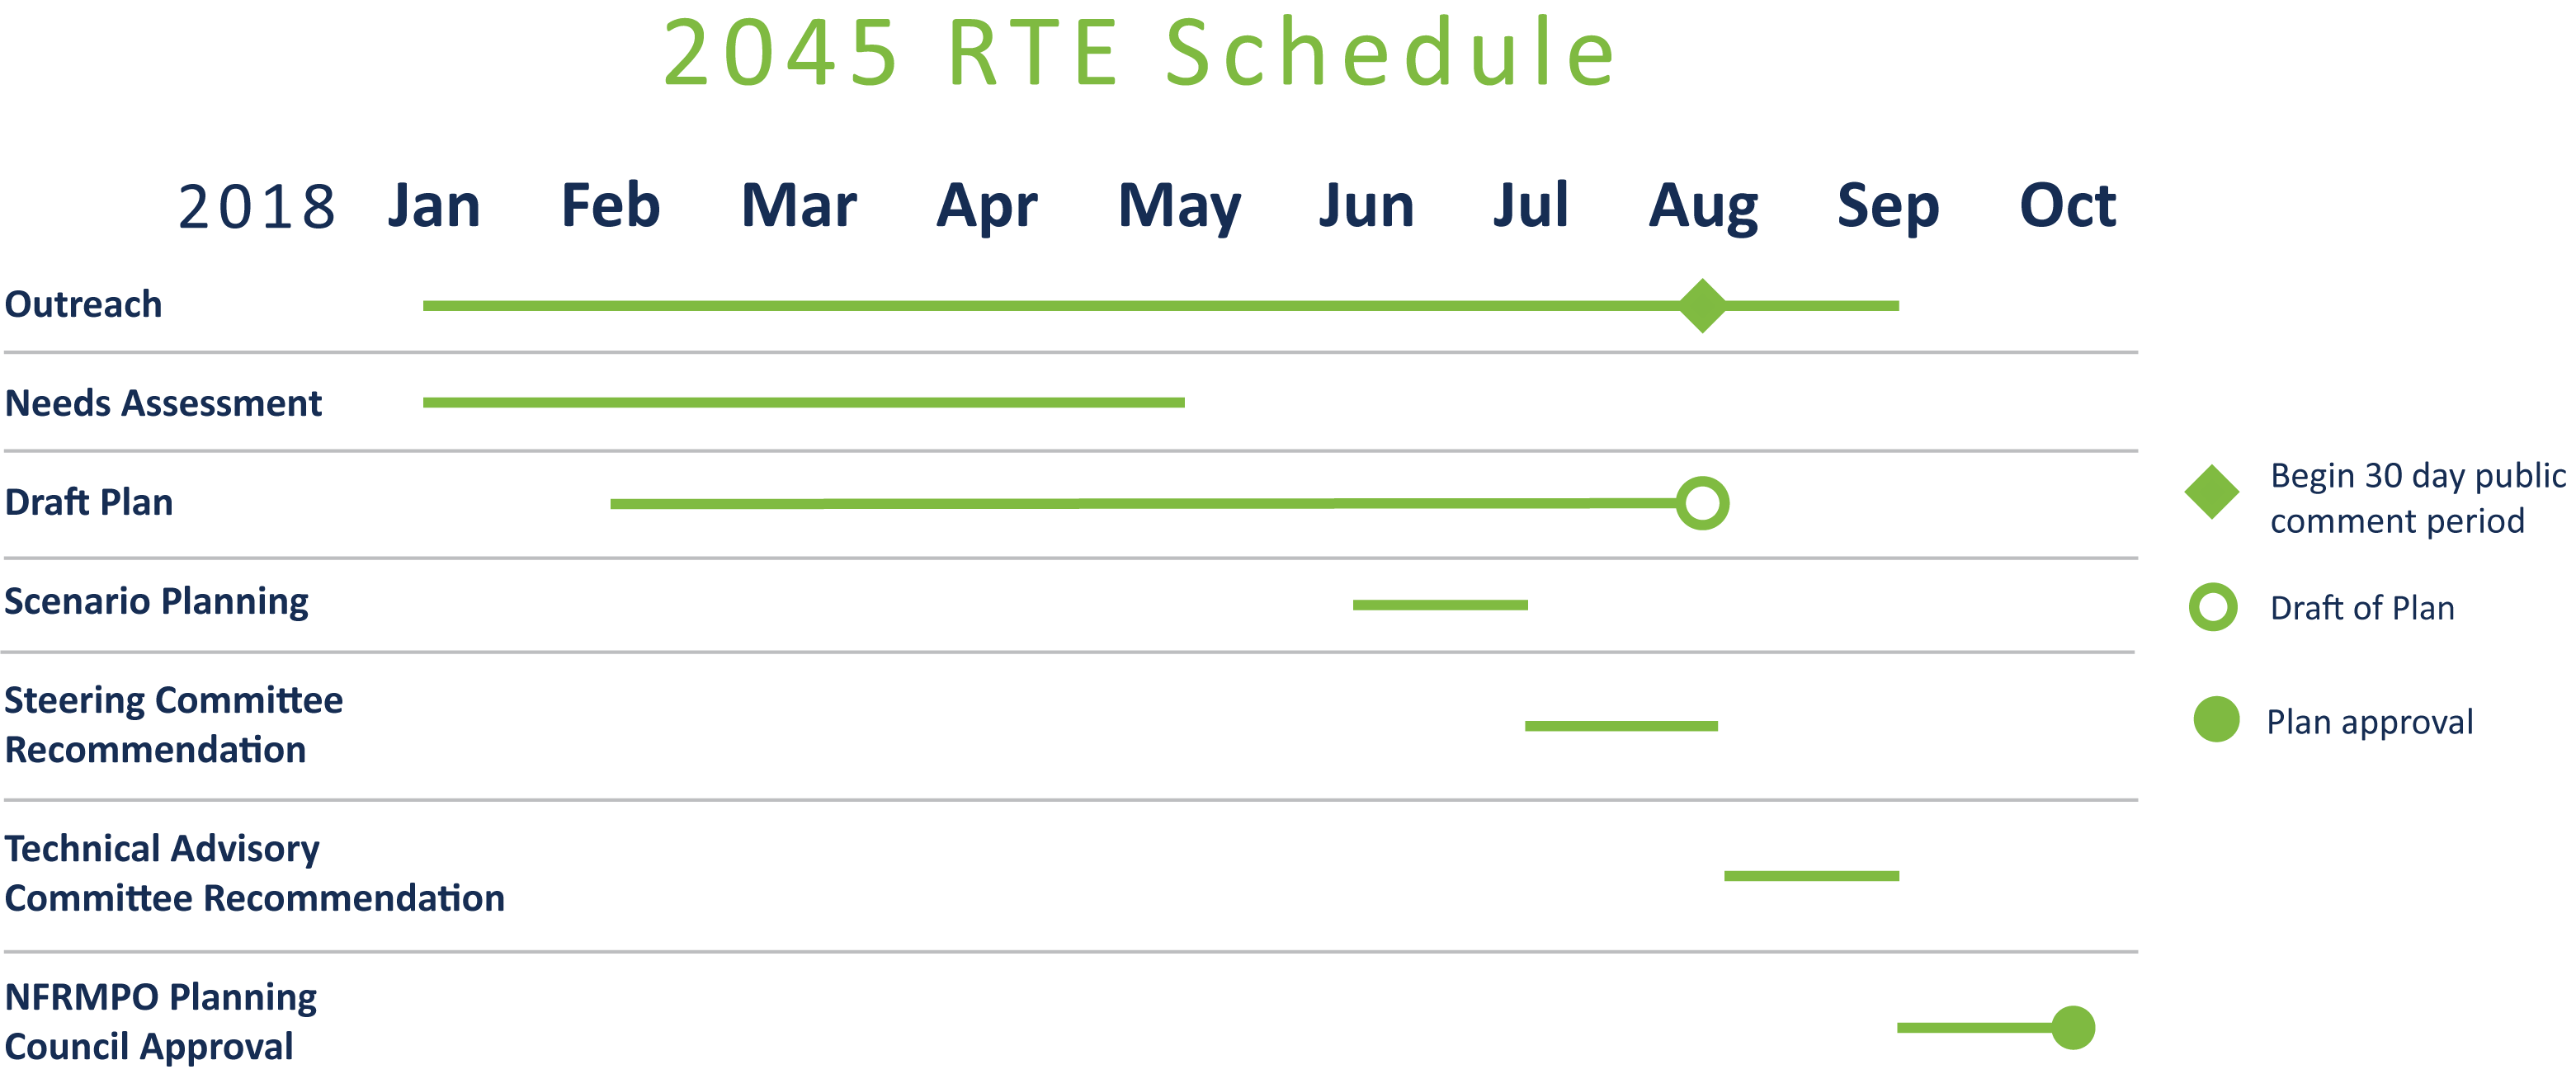 2045 rte schedule